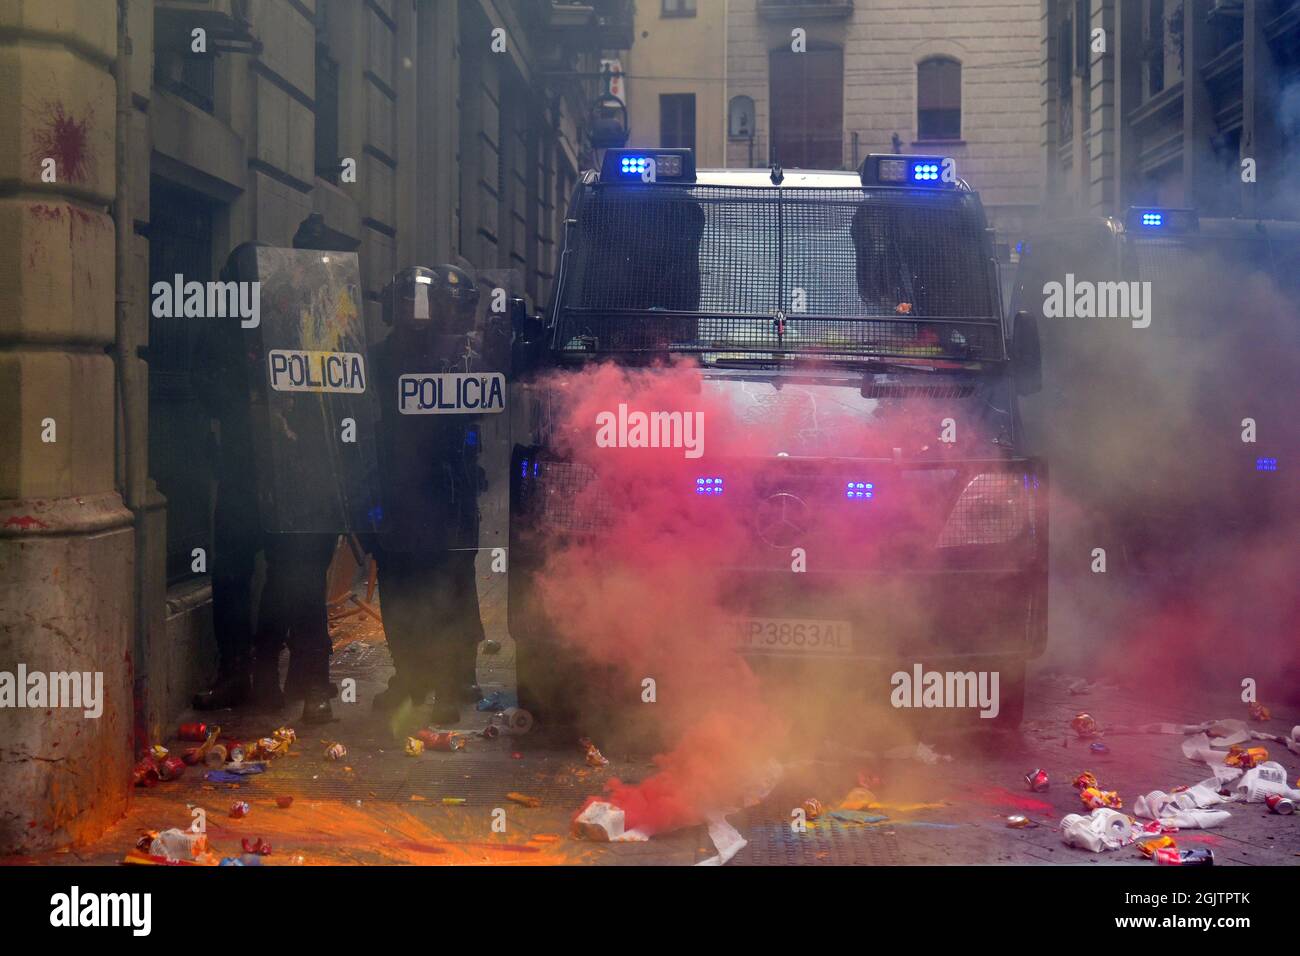 Barcelone, Espagne. 11 septembre 2021. Les agents de la police espagnole reçoivent des bombes de fumée et de peinture des manifestants lors de la manifestation de la Journée nationale de Catalogne.des manifestants pro-indépendantistes pendant la Journée nationale de Catalogne affrontent la police catalane (Mossos d'Escuadra) pour jeter des bombes de peinture, de fumée, quelques canettes, des extincteurs, Des bouteilles et des barres de fer à la police espagnole de leur quartier général à Barcelone pour protester contre les accusations de police portées lors du référendum illégal de 2017. Crédit : SOPA Images Limited/Alamy Live News Banque D'Images